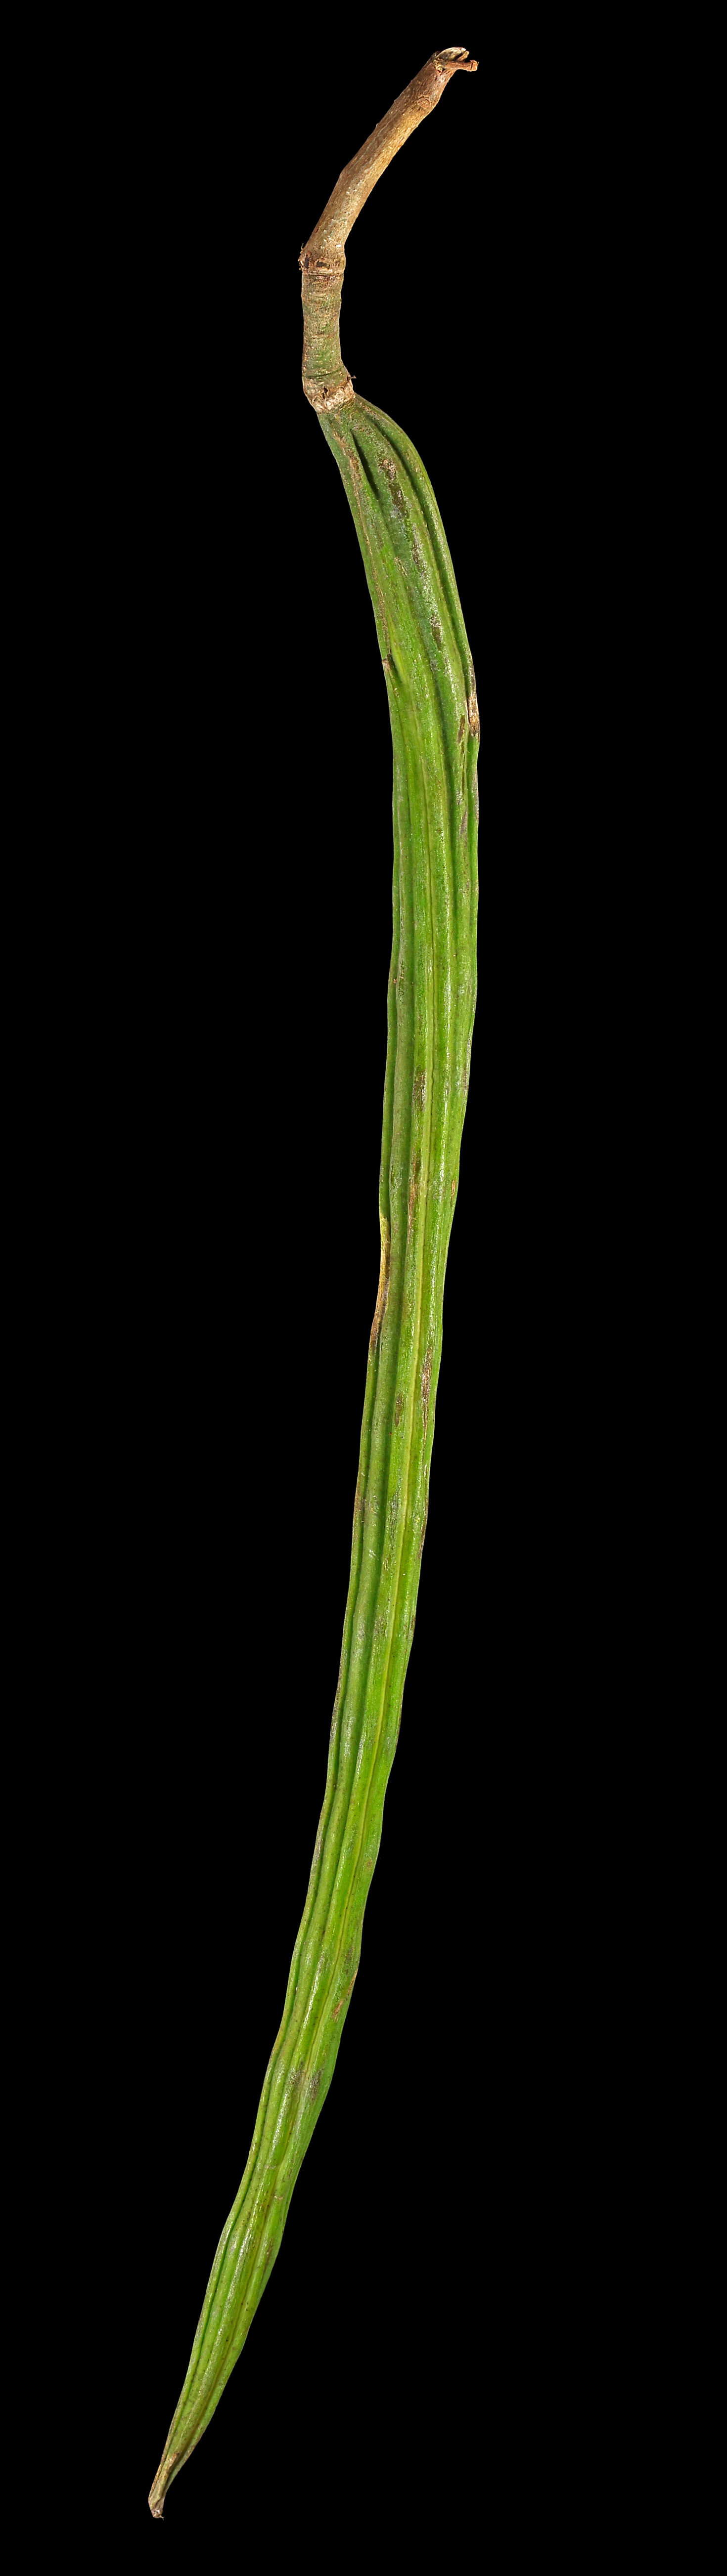 Drumstick tree: Moringa oleifera